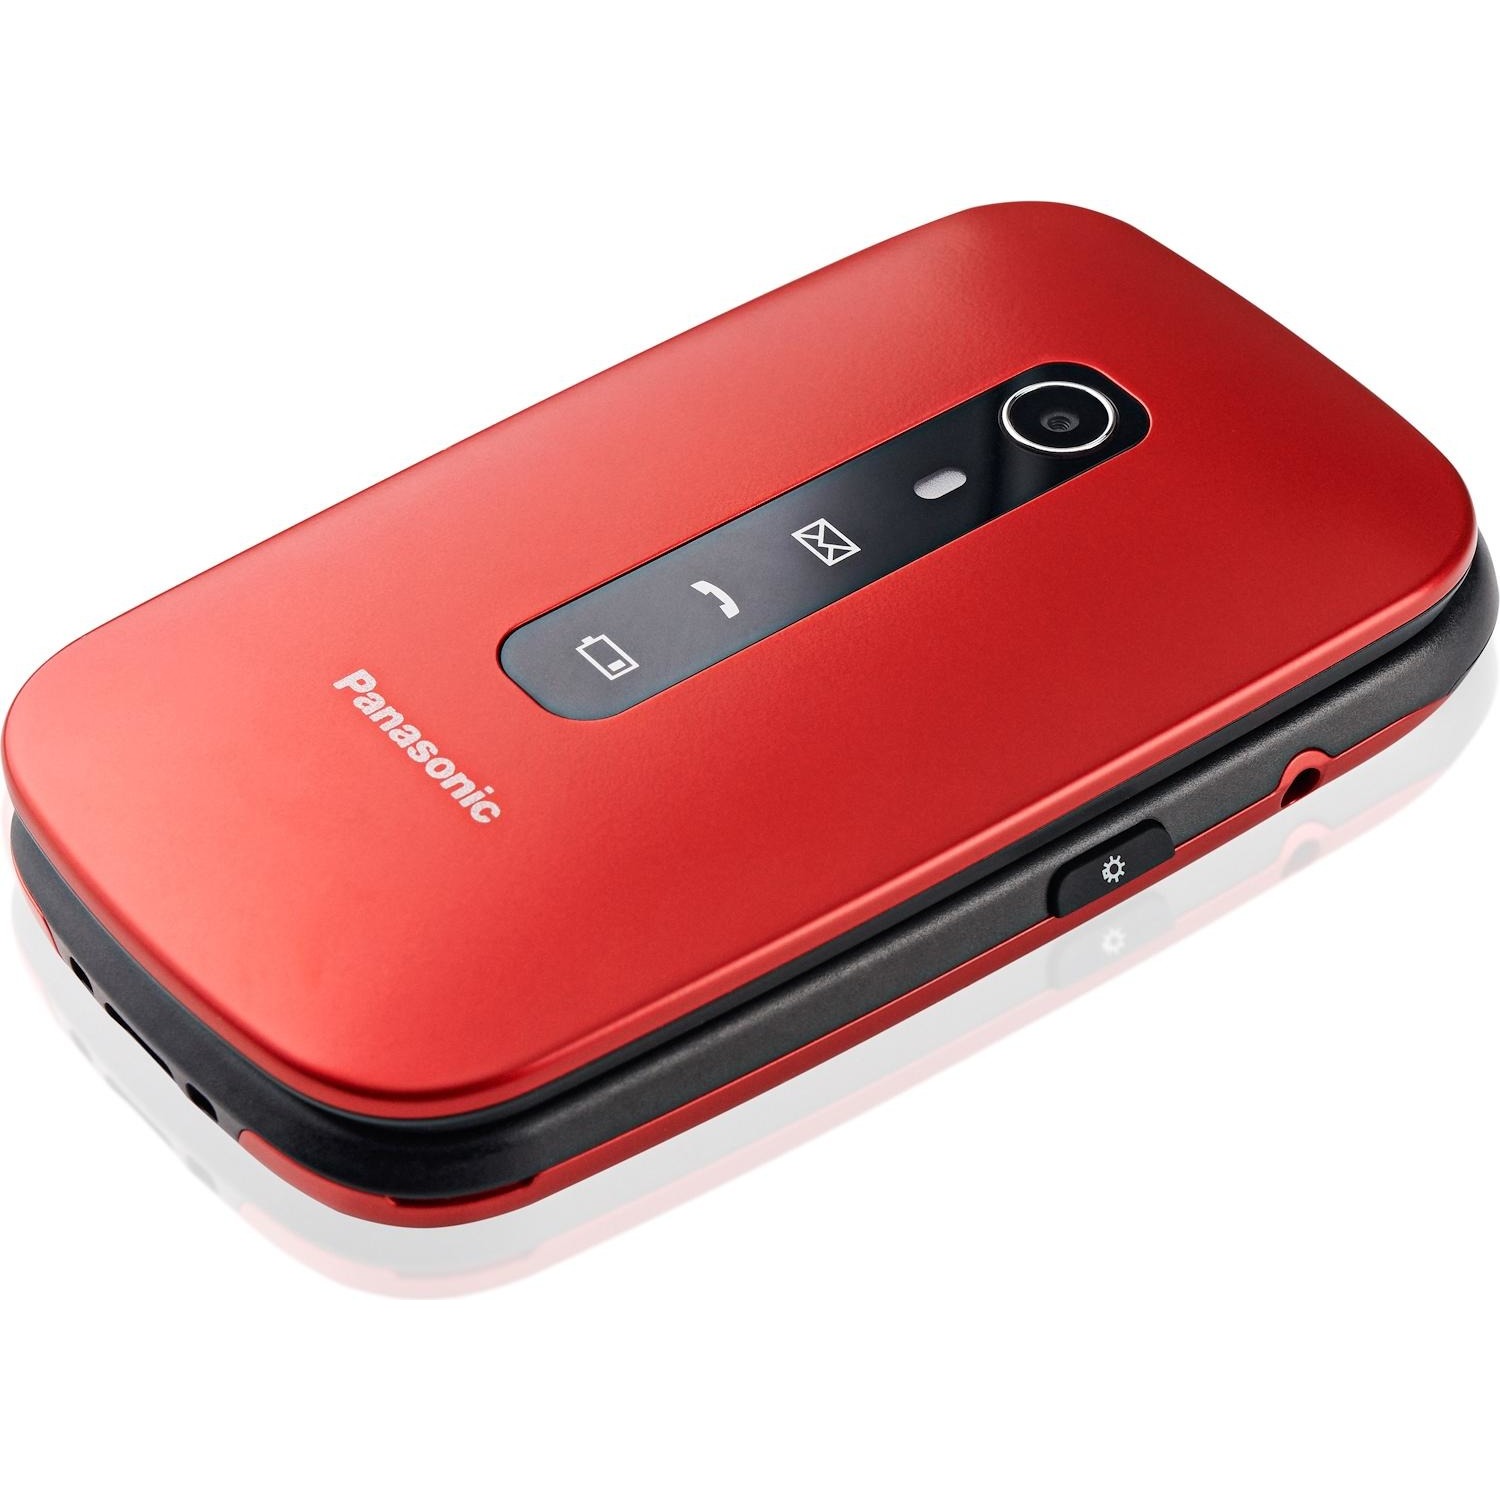 Immagine per Cellulare Panasonic TU550 red/rosso da DIMOStore